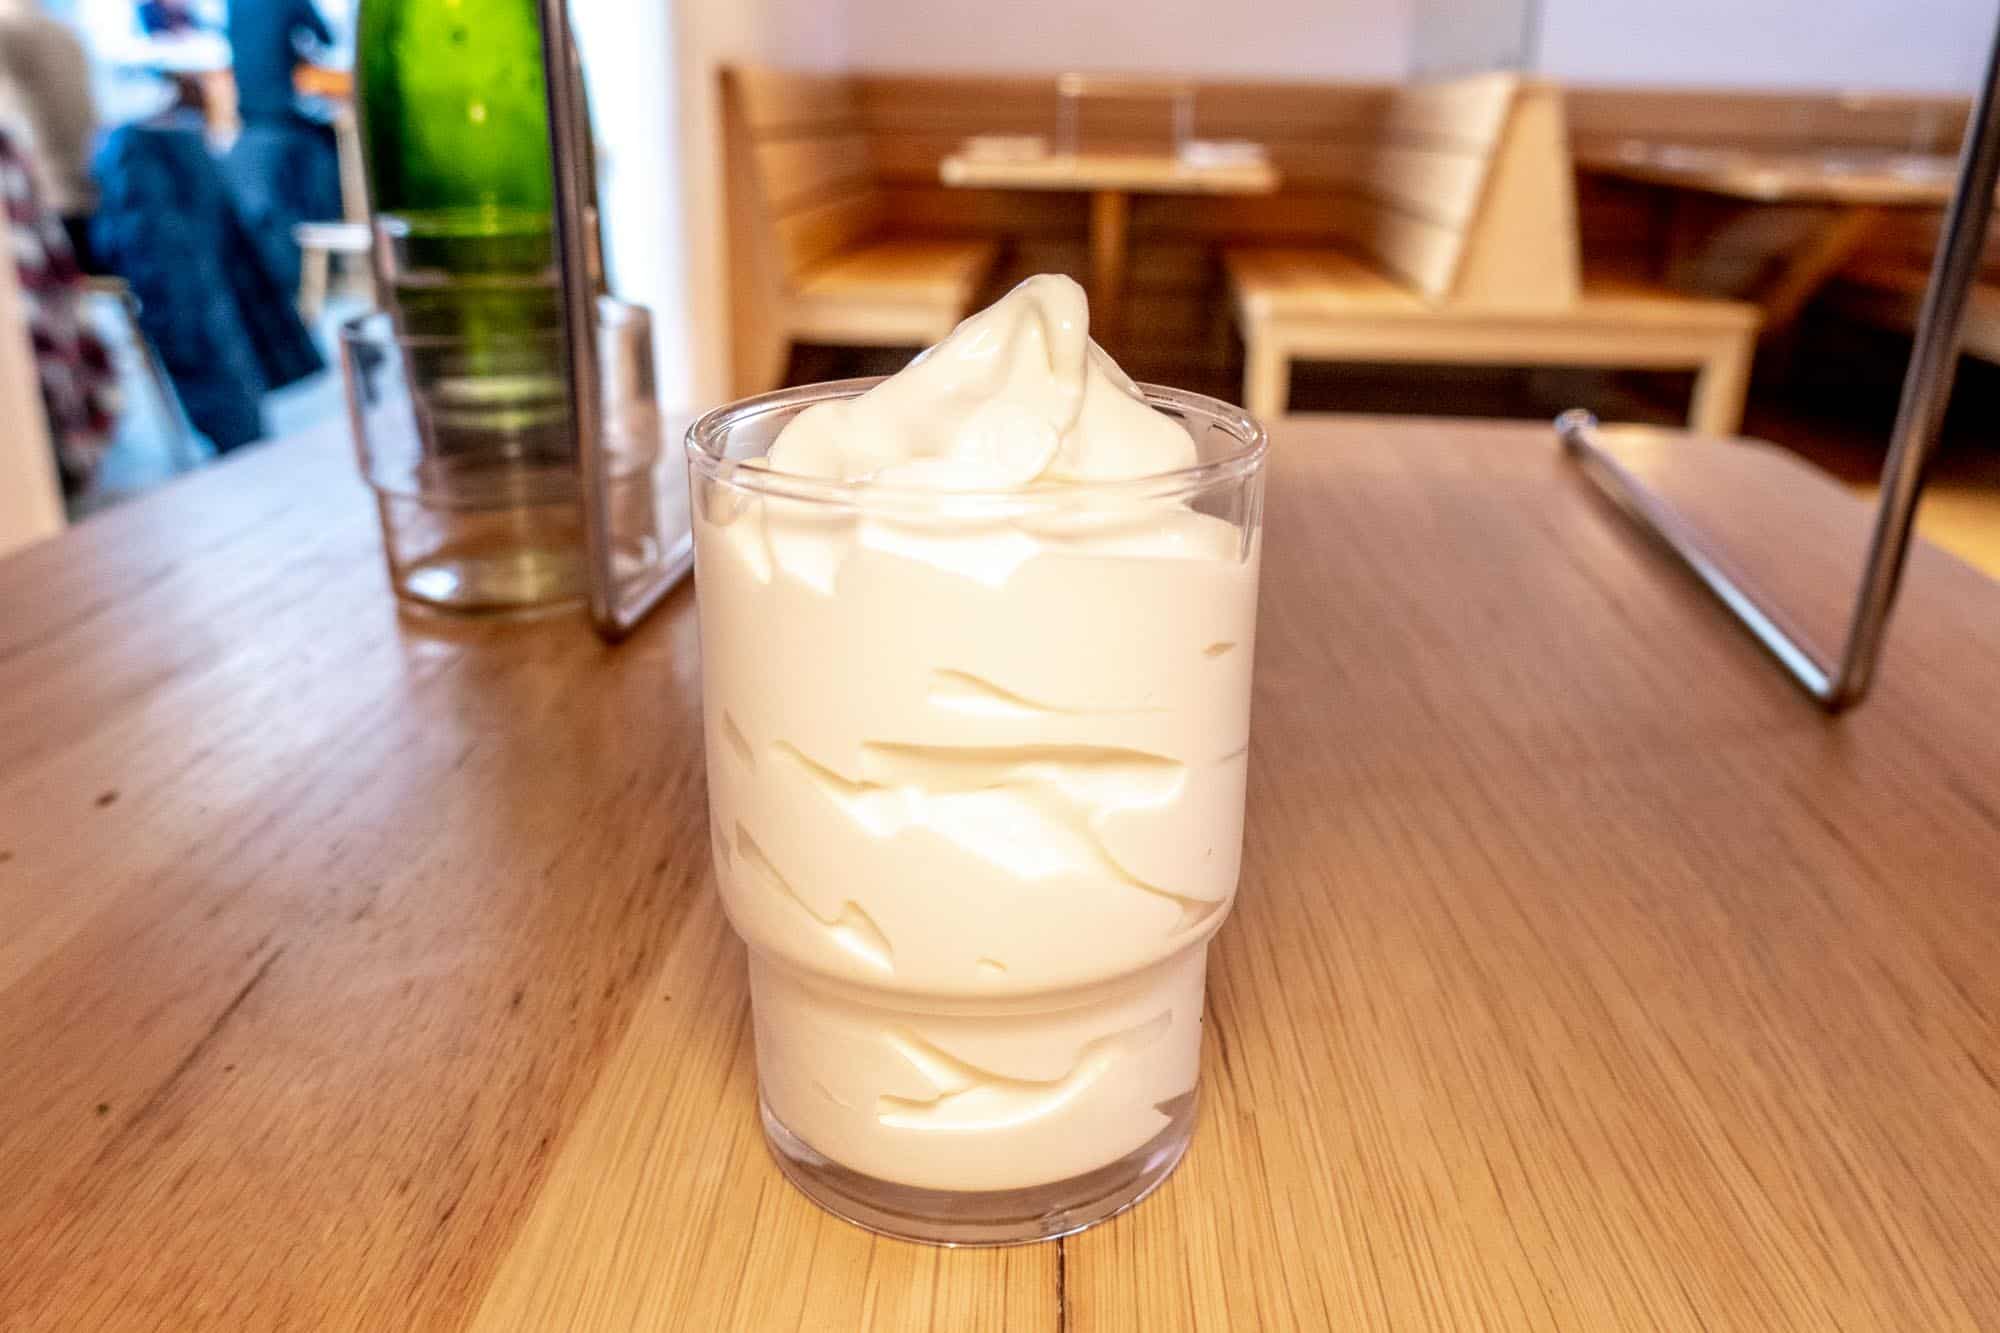 White soft serve ice cream in a glass